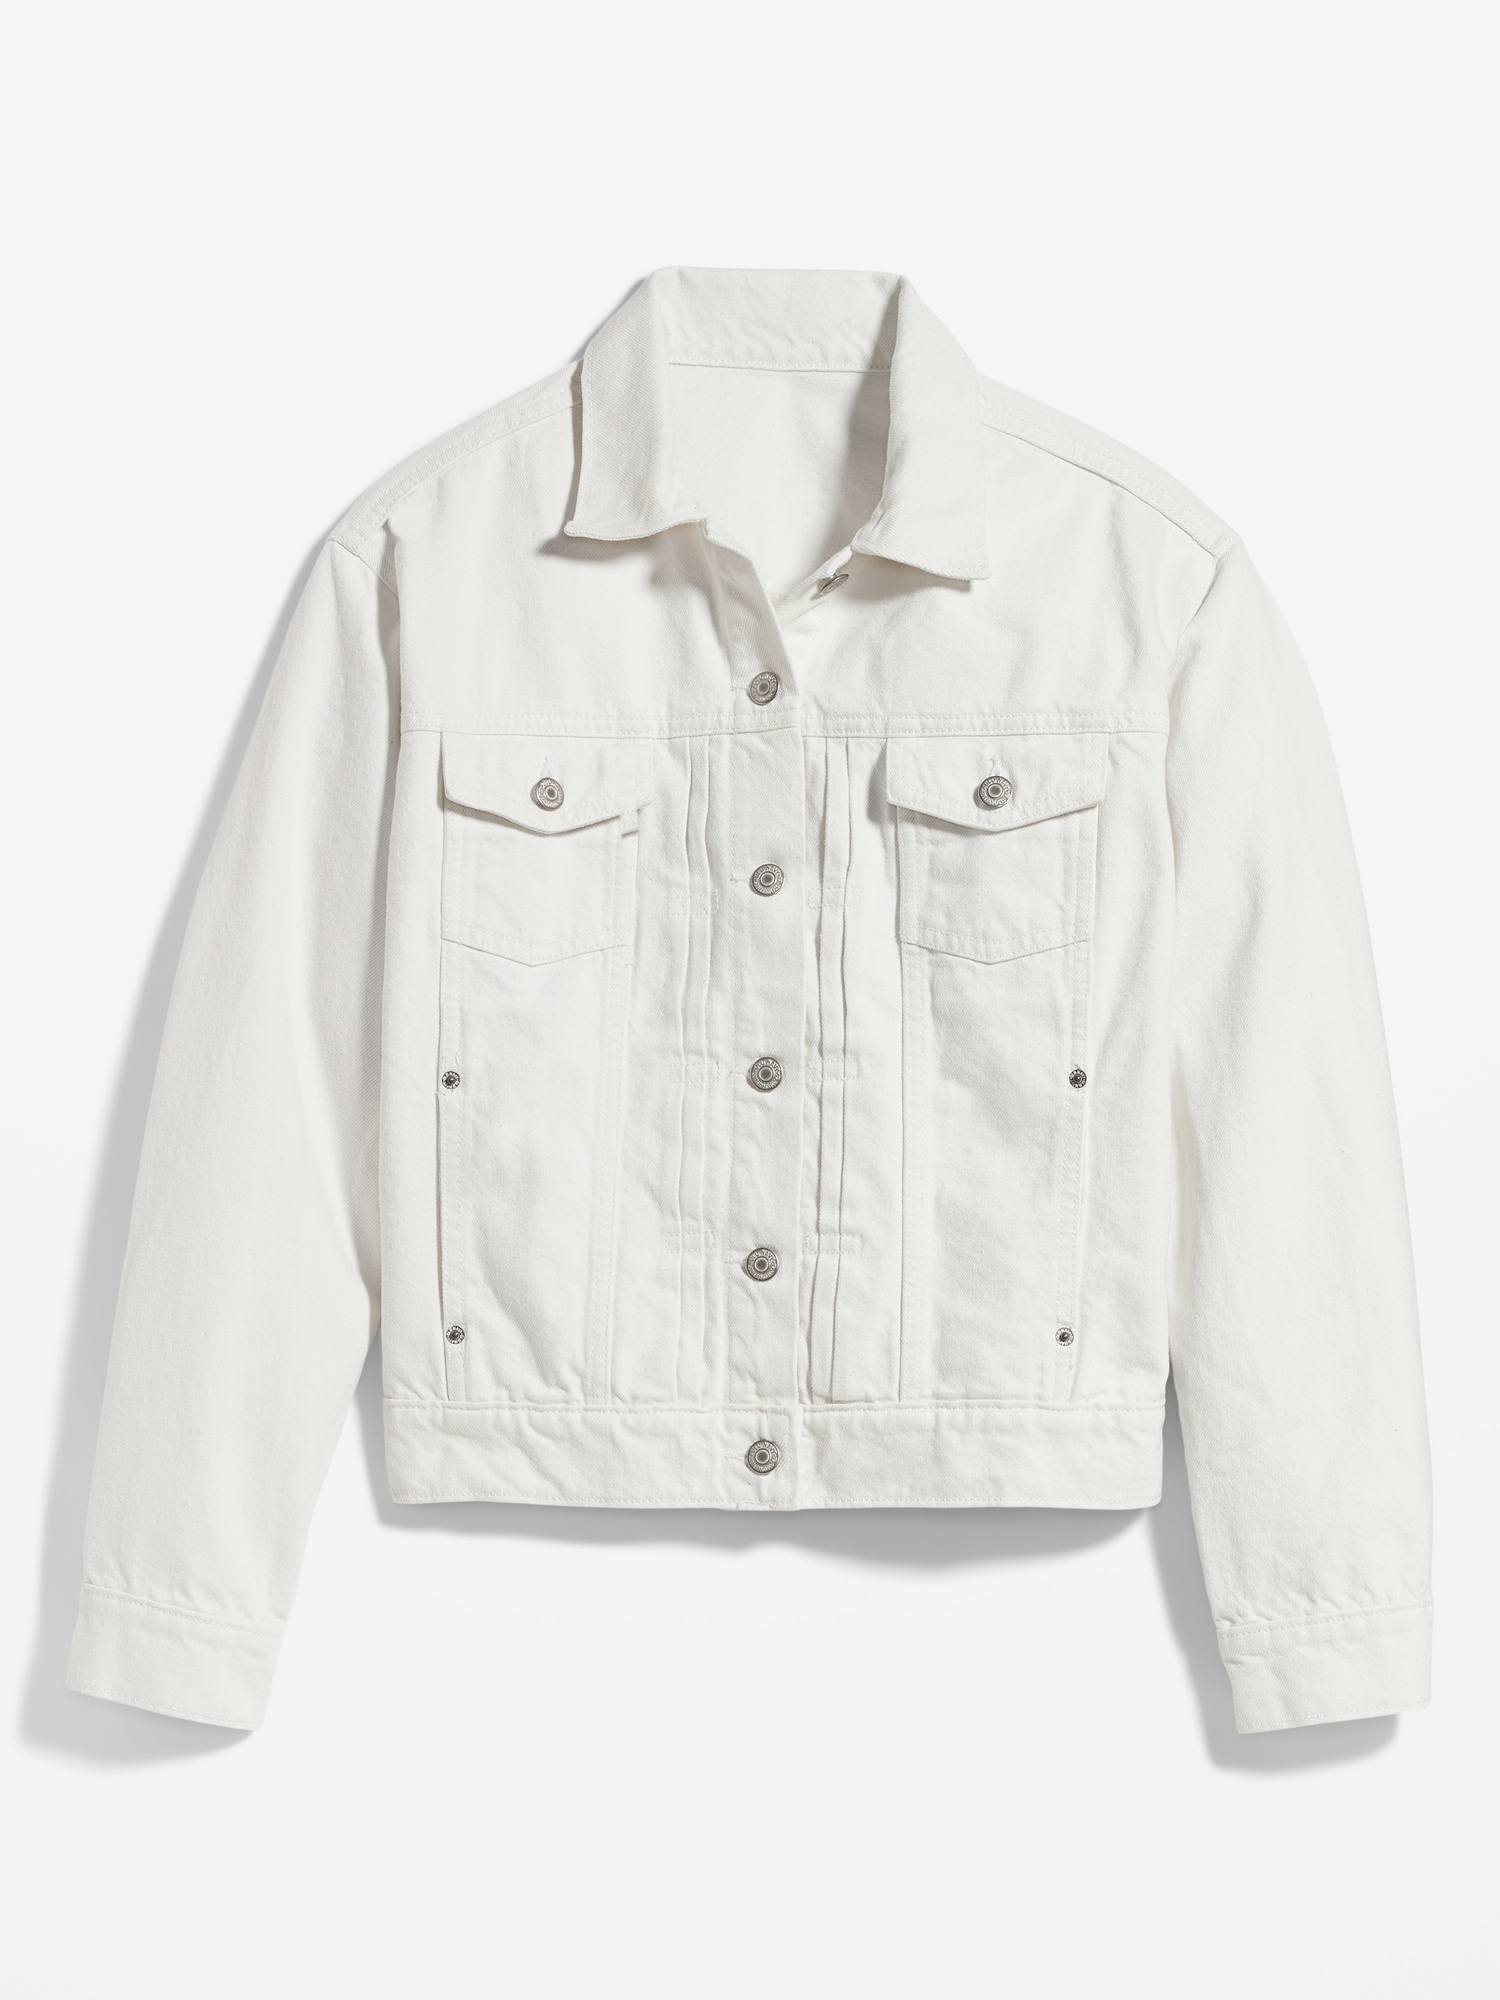 5 Ways to Wear a White Denim Jacket | White denim jacket outfit, White  denim jacket, Jean jacket outfits